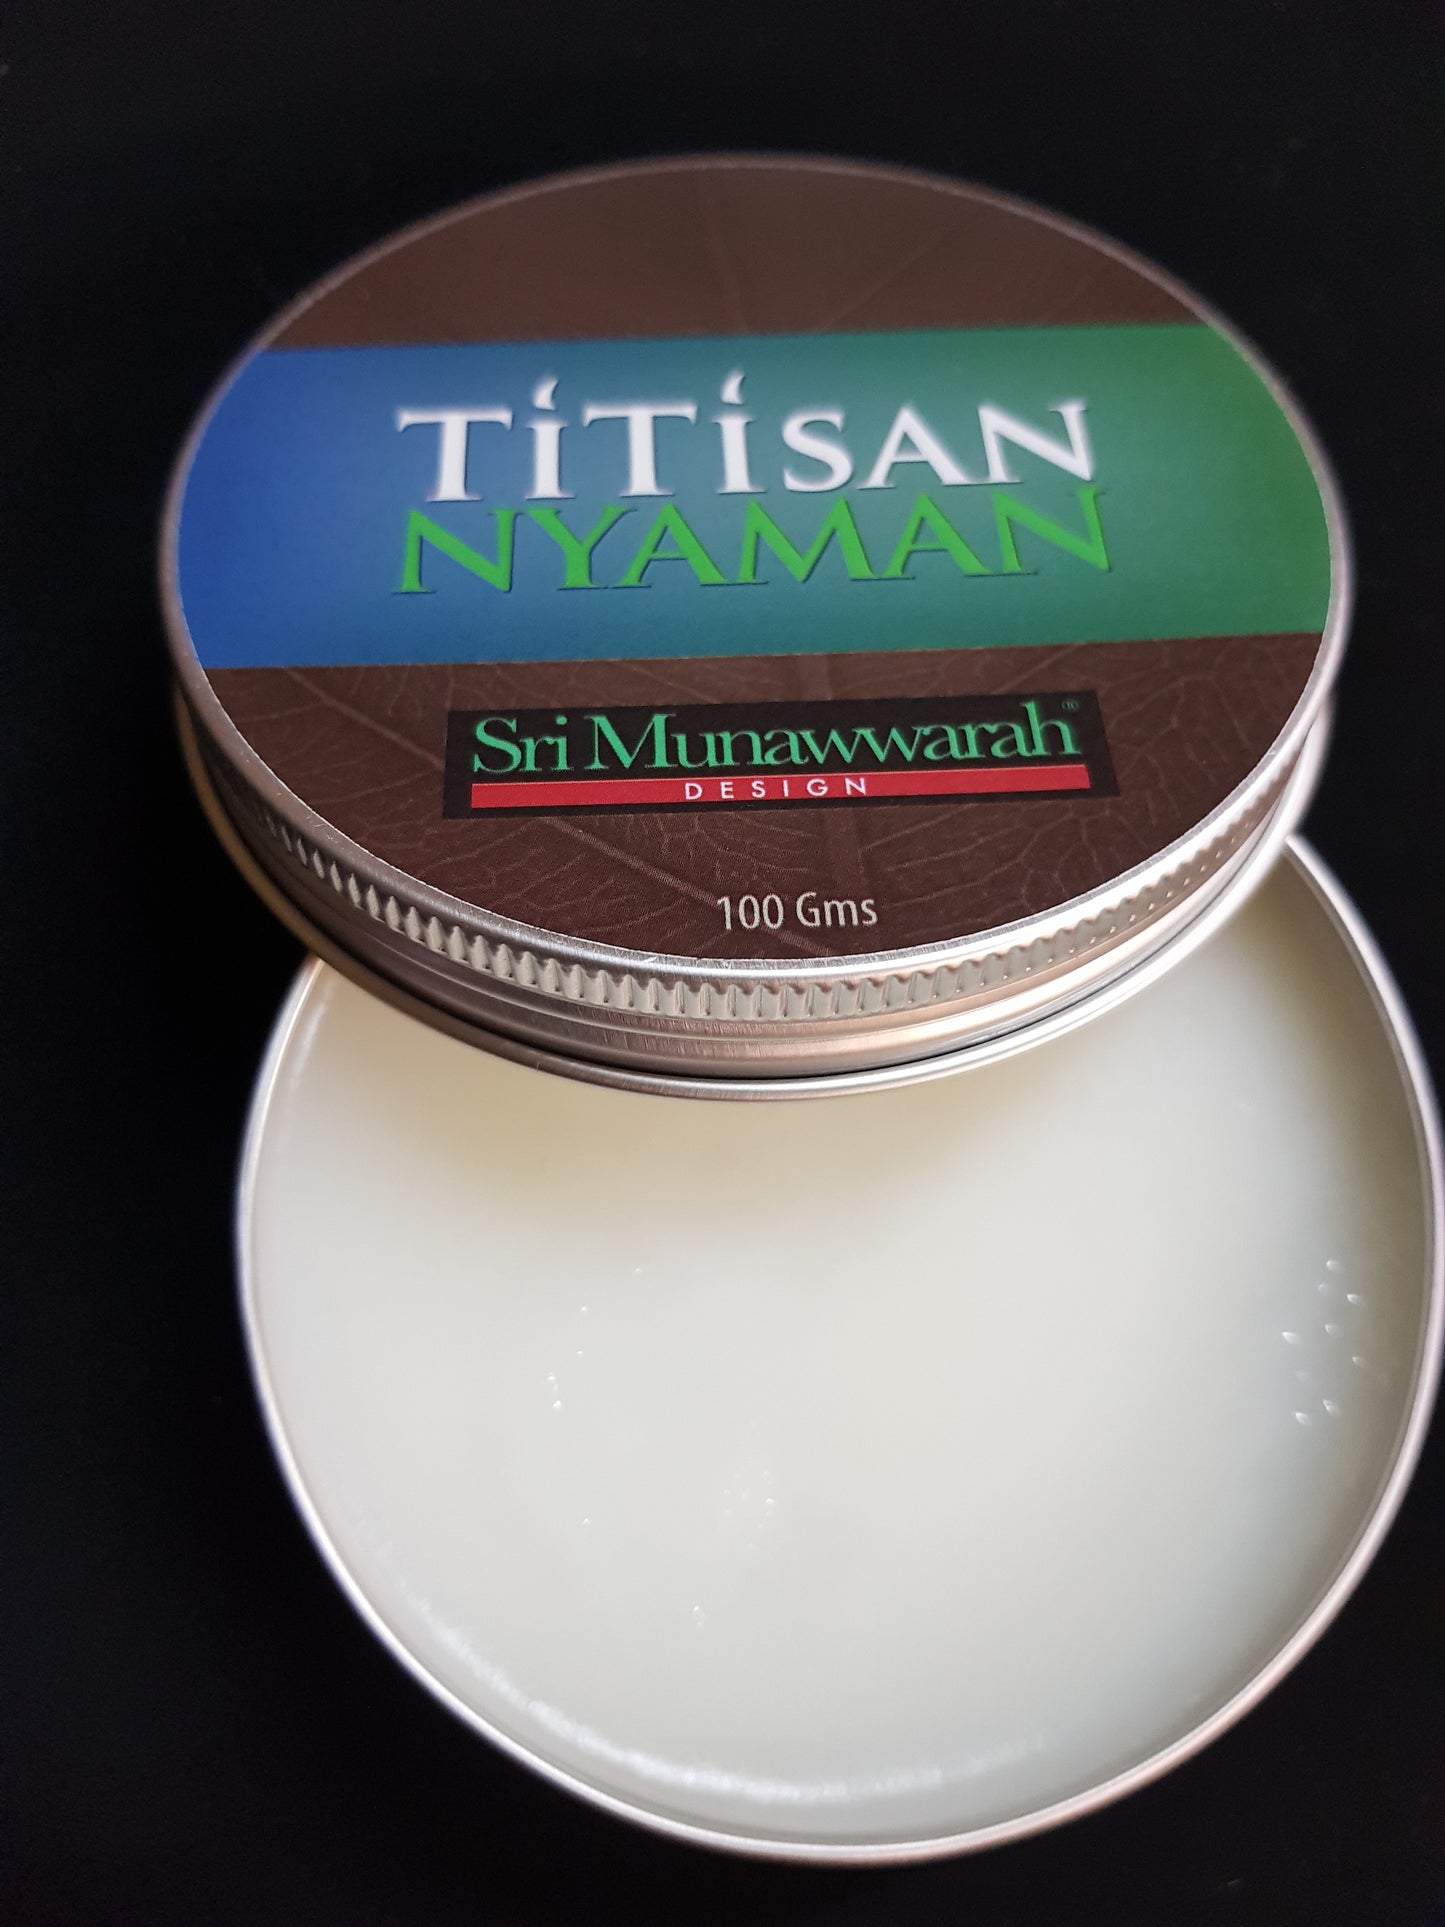 TitisanNyaman™ balm